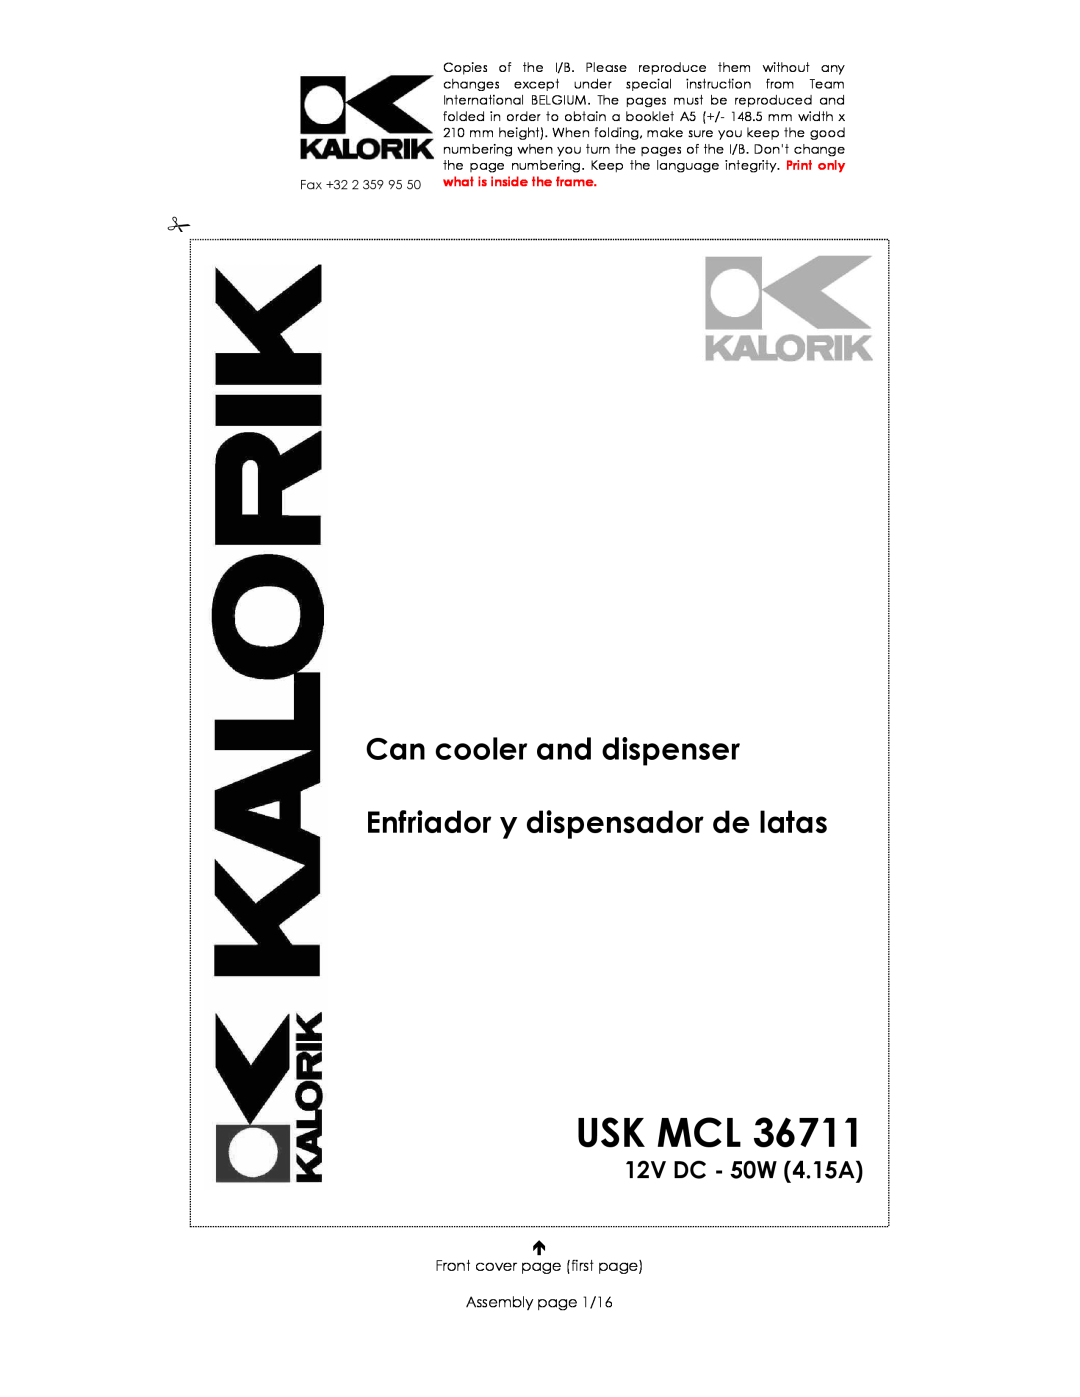 Kalorik USK MCL 36711 manual Usk Mcl, Can cooler and dispenser Enfriador y dispensador de latas, 12V DC - 50W 4.15A 